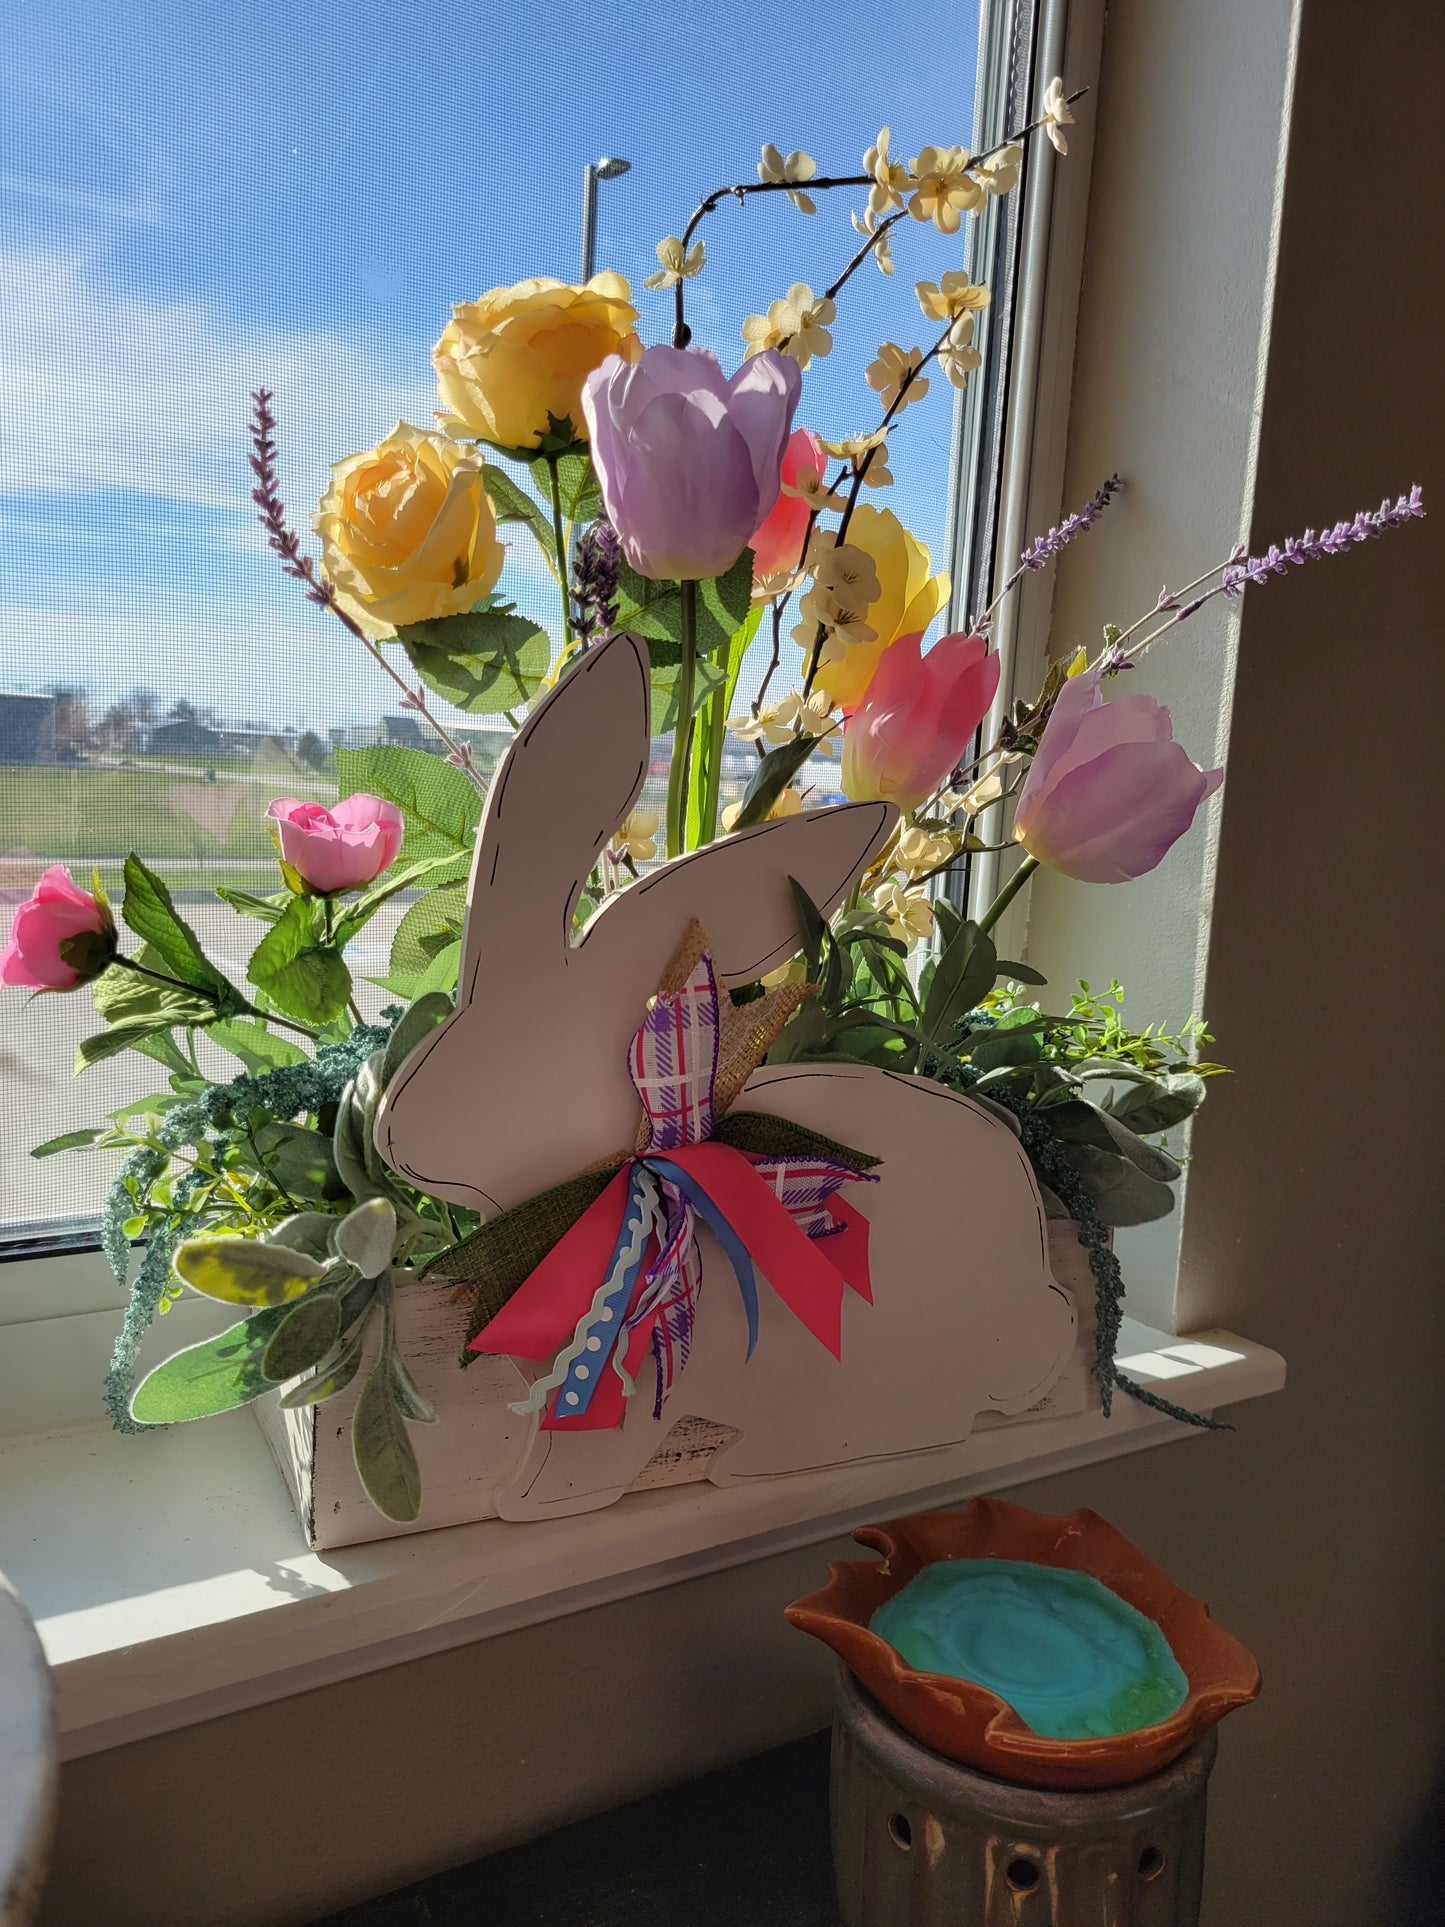 Rabbit floral Arrangement